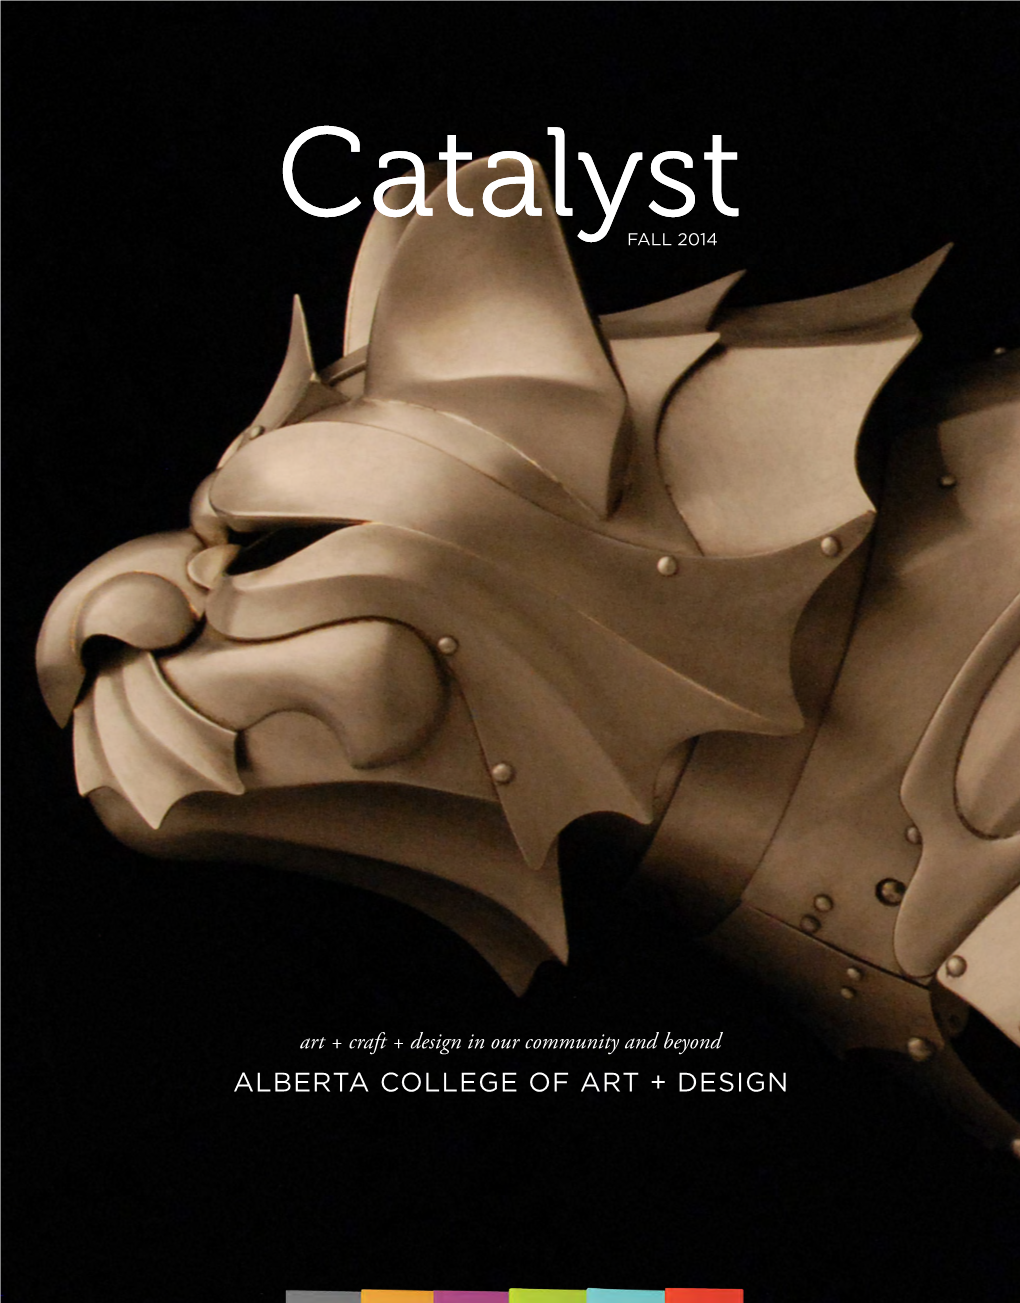 Alberta College of Art + Design